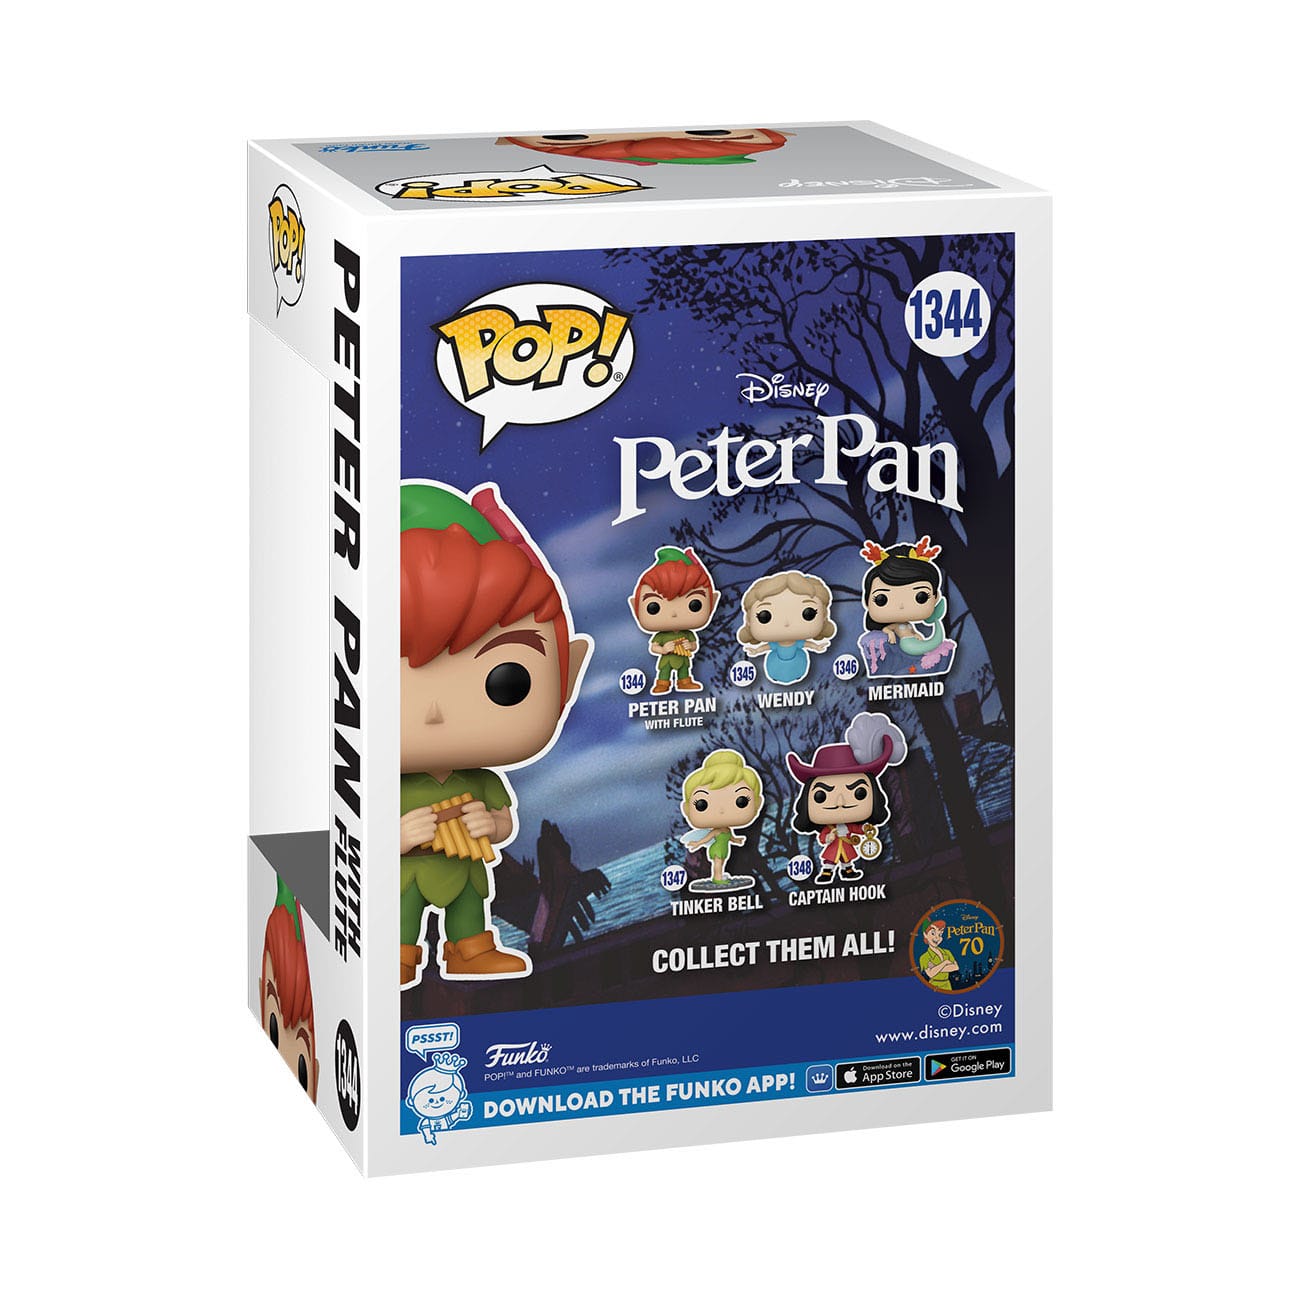 Disney Peter Pan 70th Anniversary - Peter Pan 1344